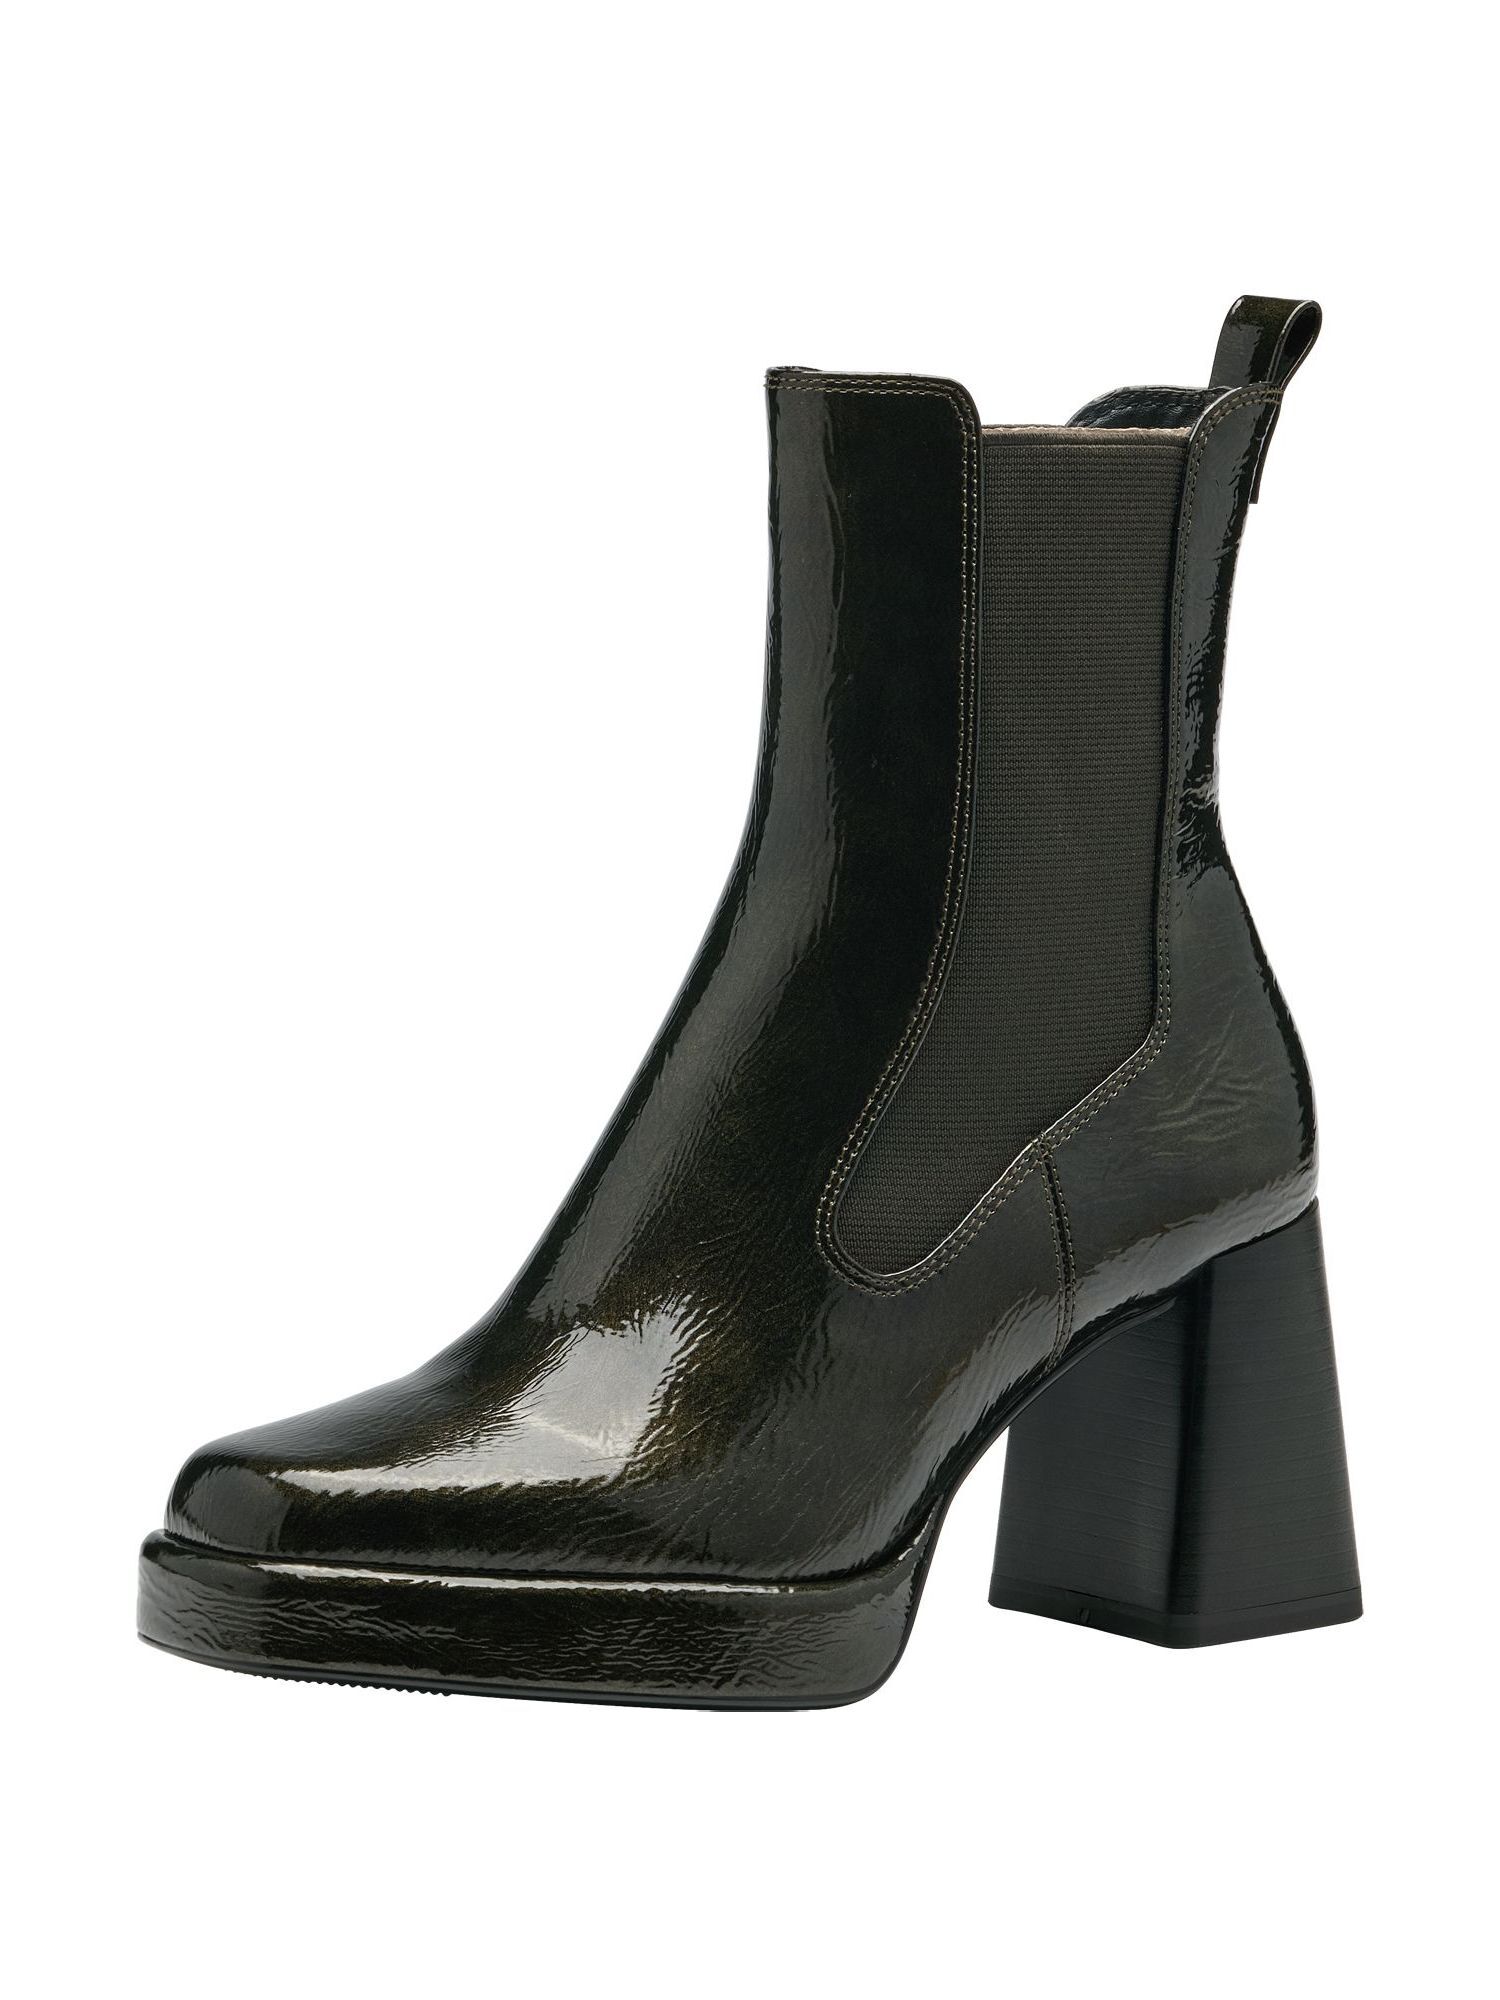 Ботинки Tamaris Chelsea Boot, оливковый ботинки женские tamaris оливковый 41